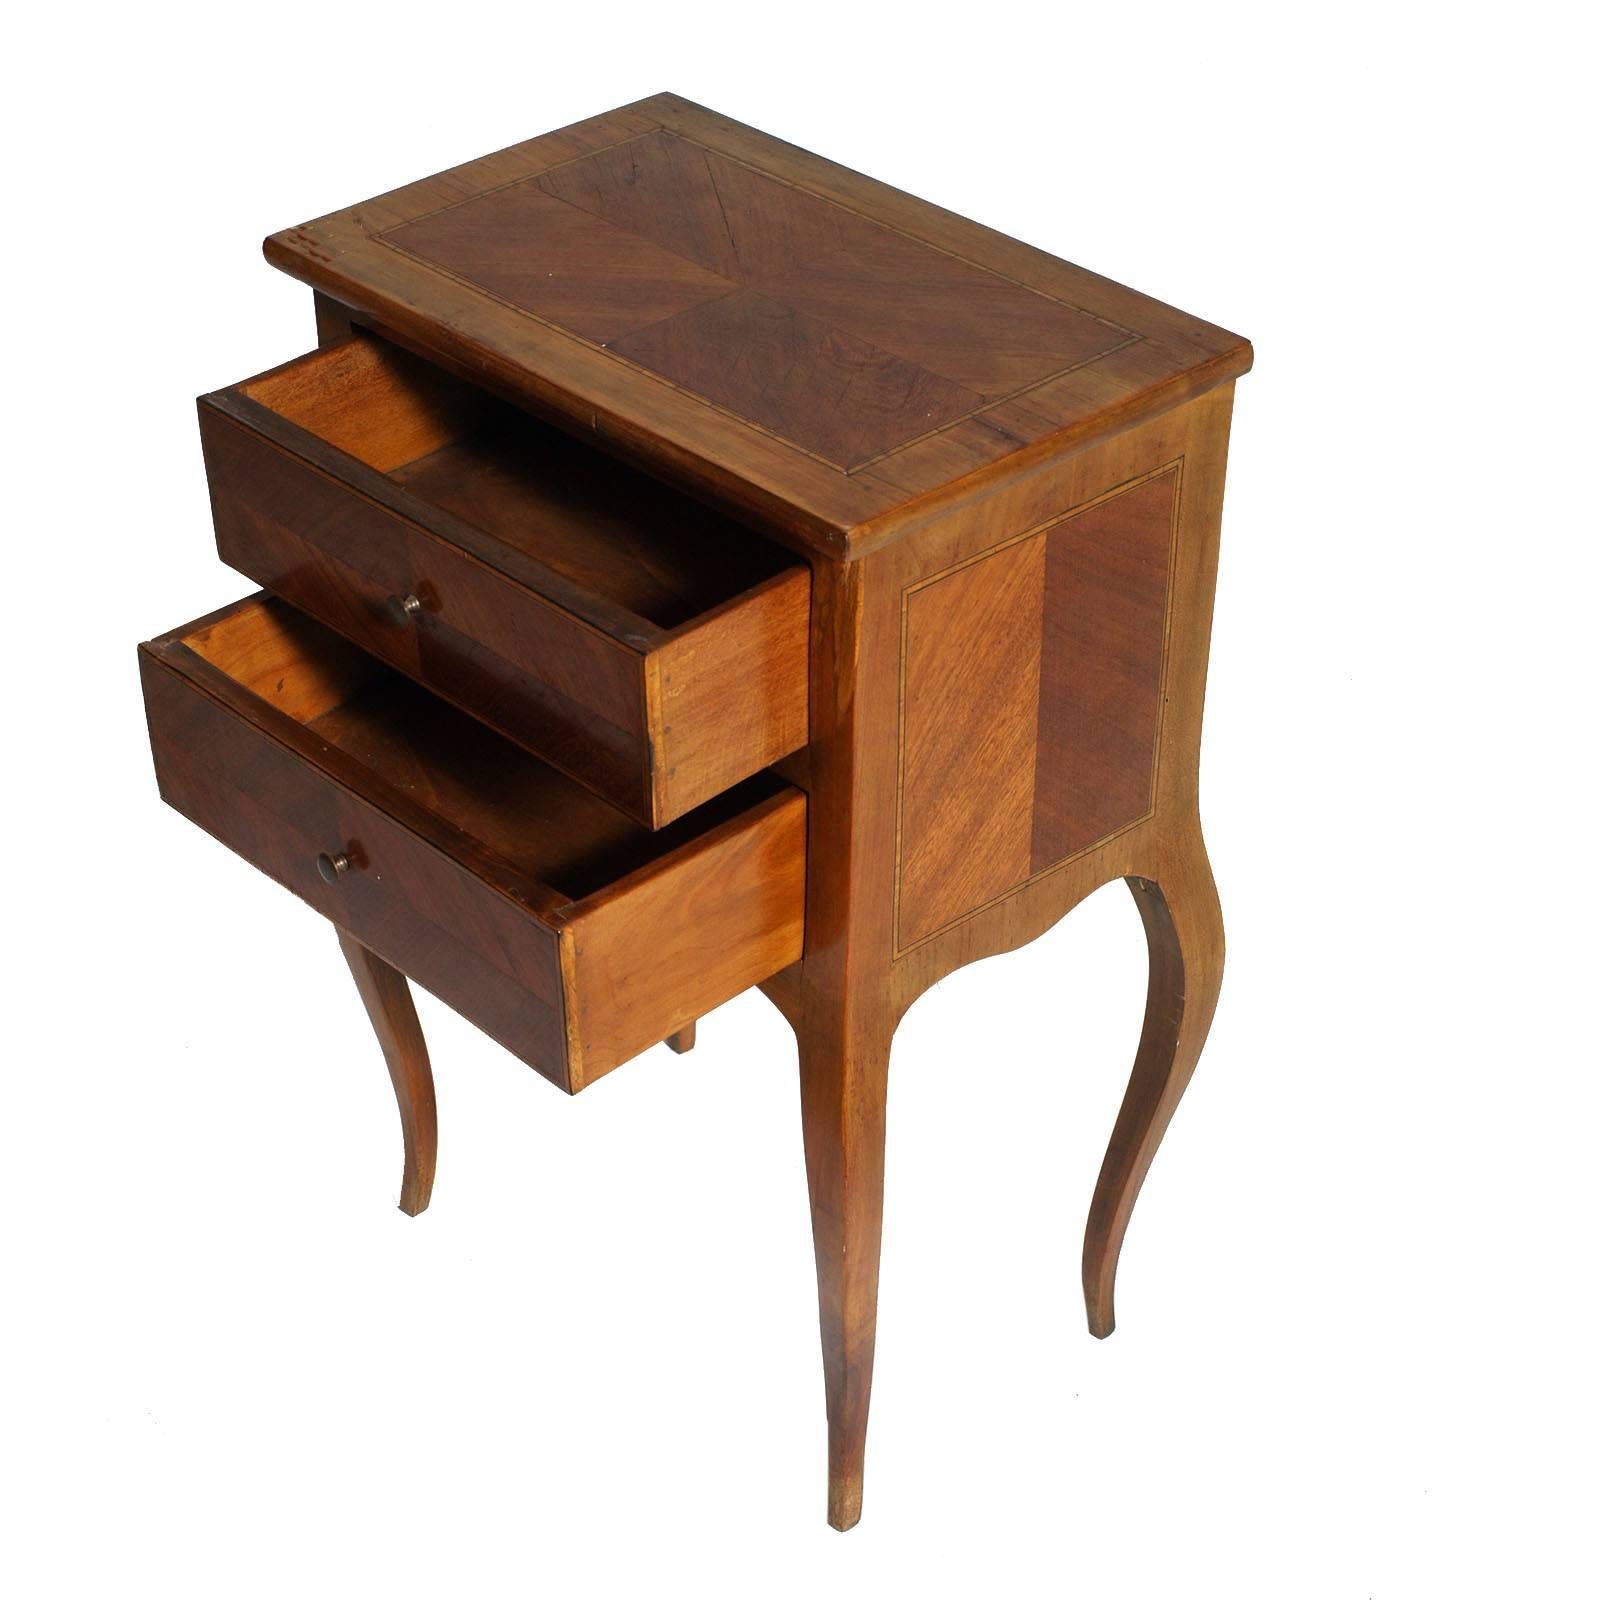 Petit meuble d'appoint ou table de nuit Louis XV des années 1920 érable blond et incrustation de noyer, restauré et ciré

Mesure cm : H 60 x L 40 x P 26.